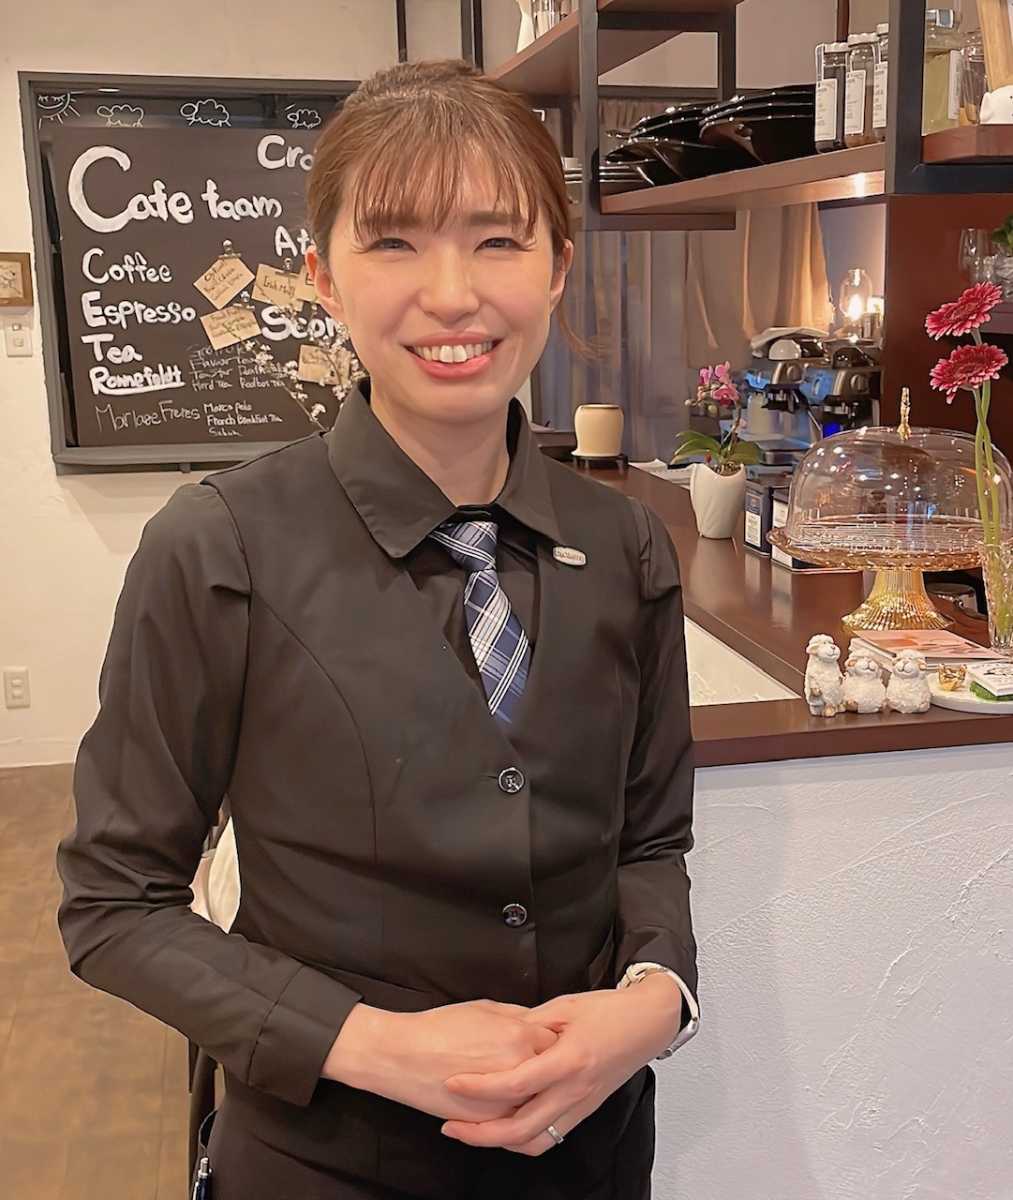 『Cafe faam（カフェ ファーム）』 で素敵なティータイムを満喫しました  神戸市 [画像]